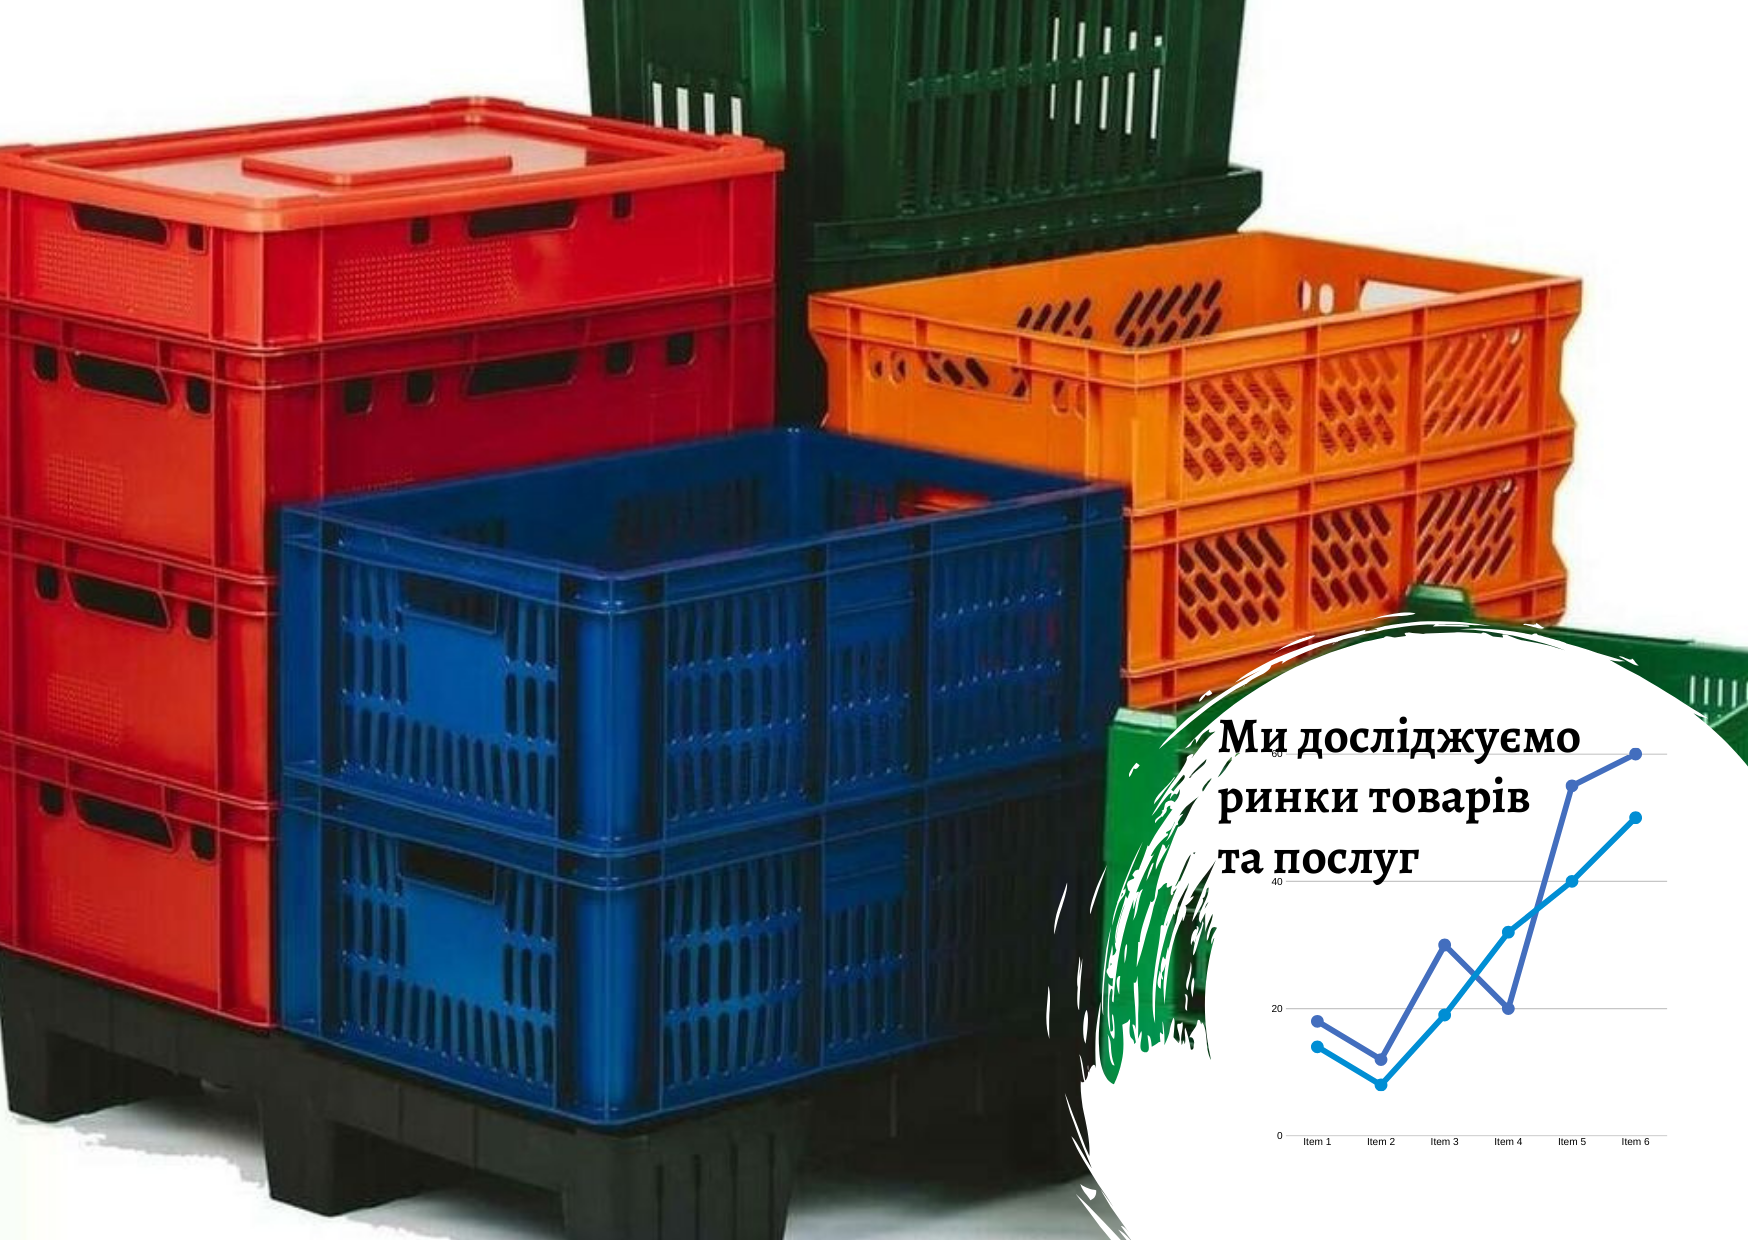 Ukrainian plastic products market in Ukraine – Pro-Consulting